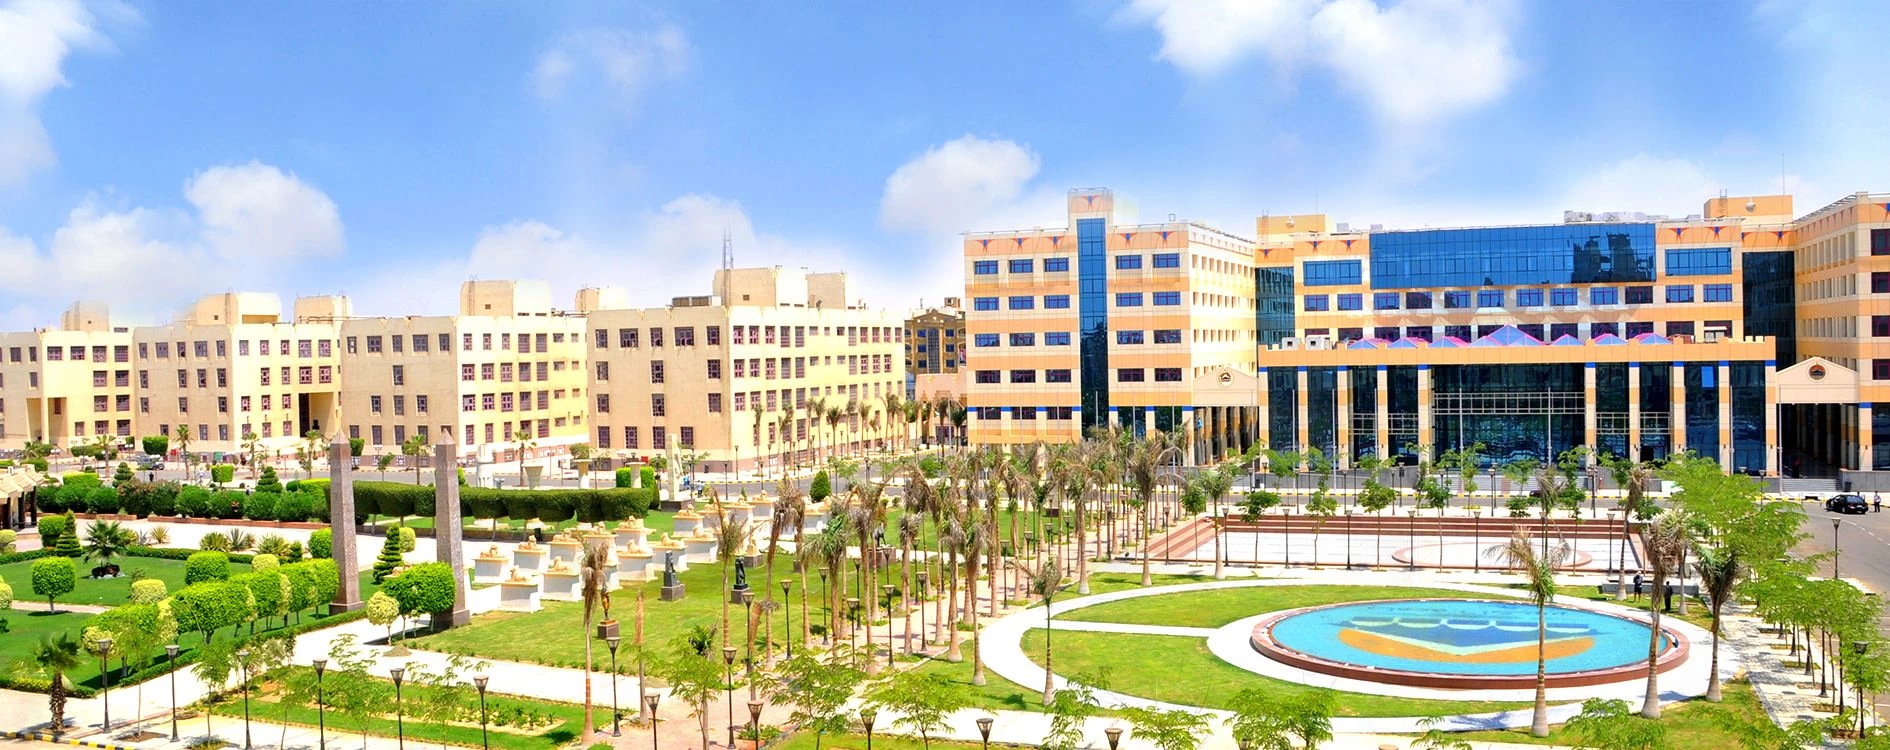 افضل التخصصات الجامعية في جامعة 6 أكتوبر وجامعة مصر الدولية للسعوديين